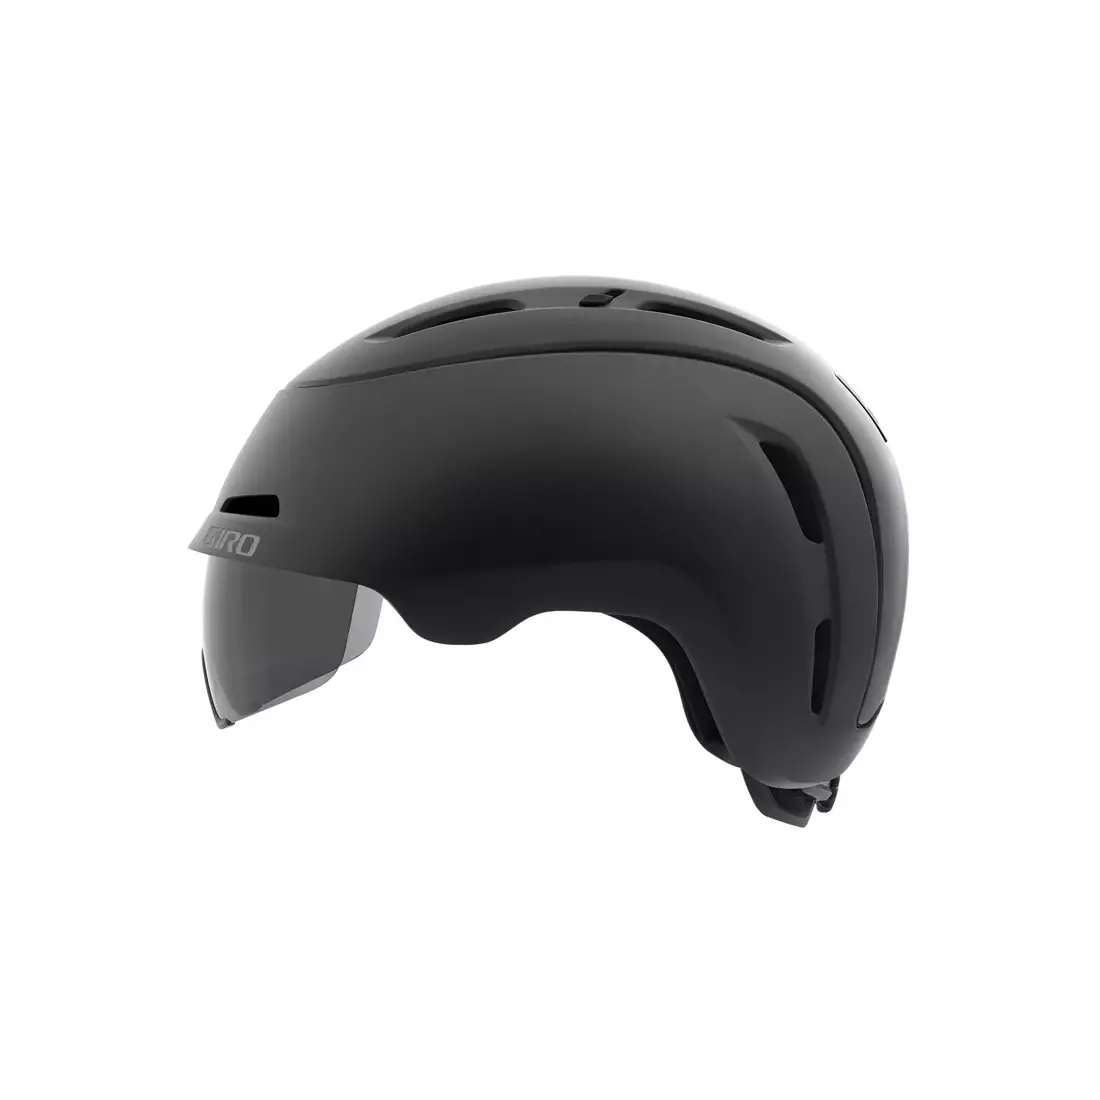 GIRO městská cyklistická helma bexley mips matte black GR-7079085